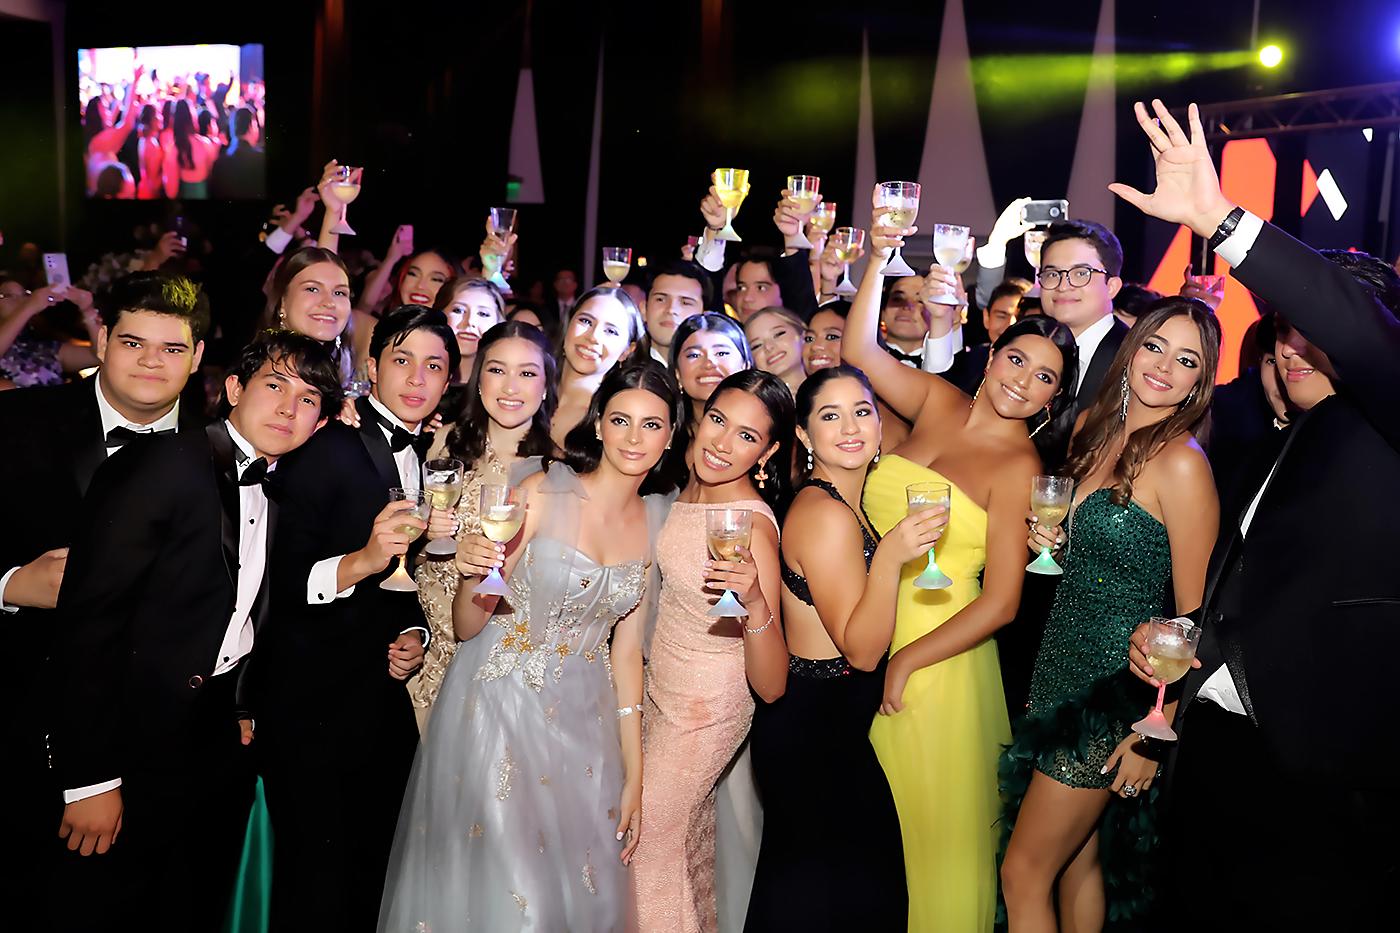 Así vivieron su prom night los senior 2022 de La Academia Los Pinares